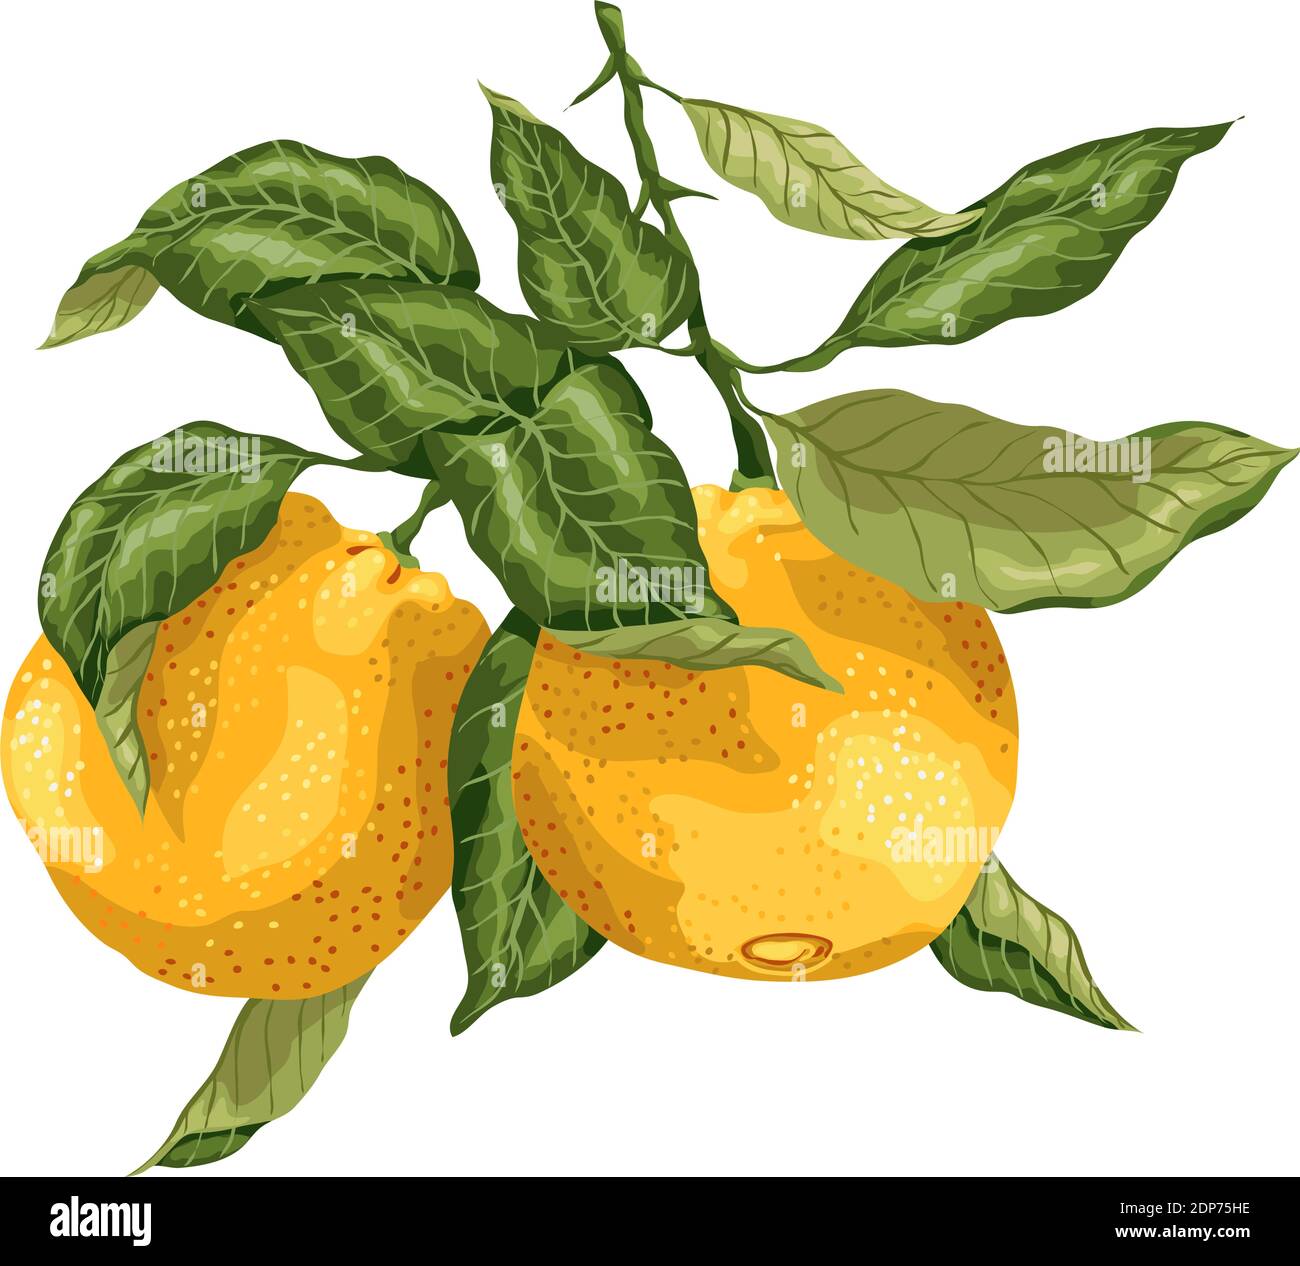 Branche lumineuse avec fruits orange, motif graphique avec feuilles aux couleurs vives. L'image est réalisée avec un réalisme graphique Illustration de Vecteur